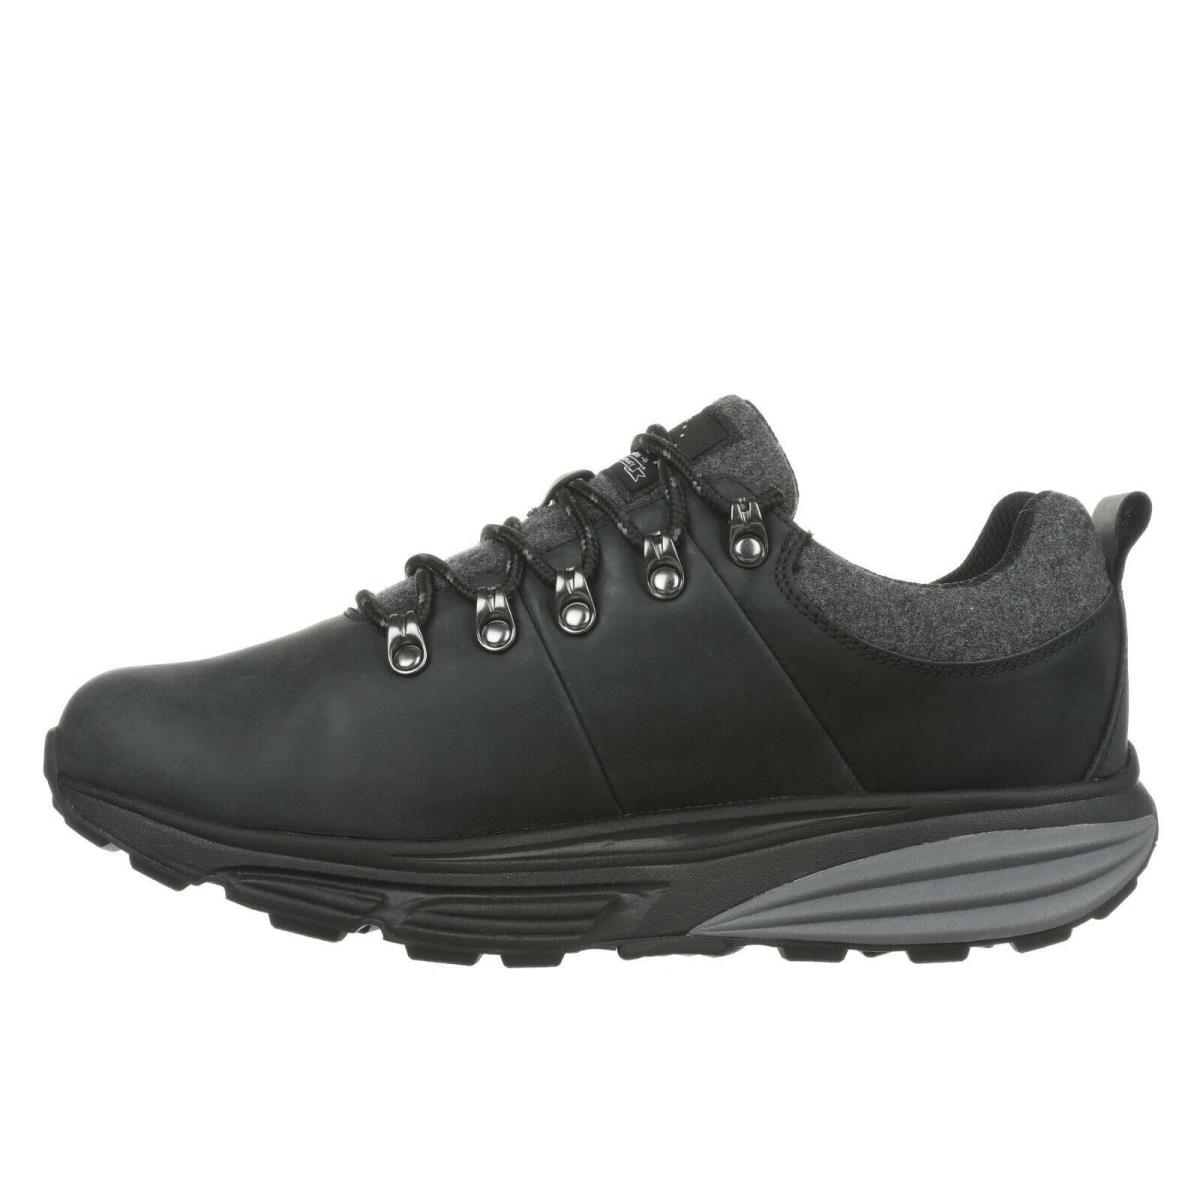 MBT shoes ALPINE - BLACK-GORE-TEX 2